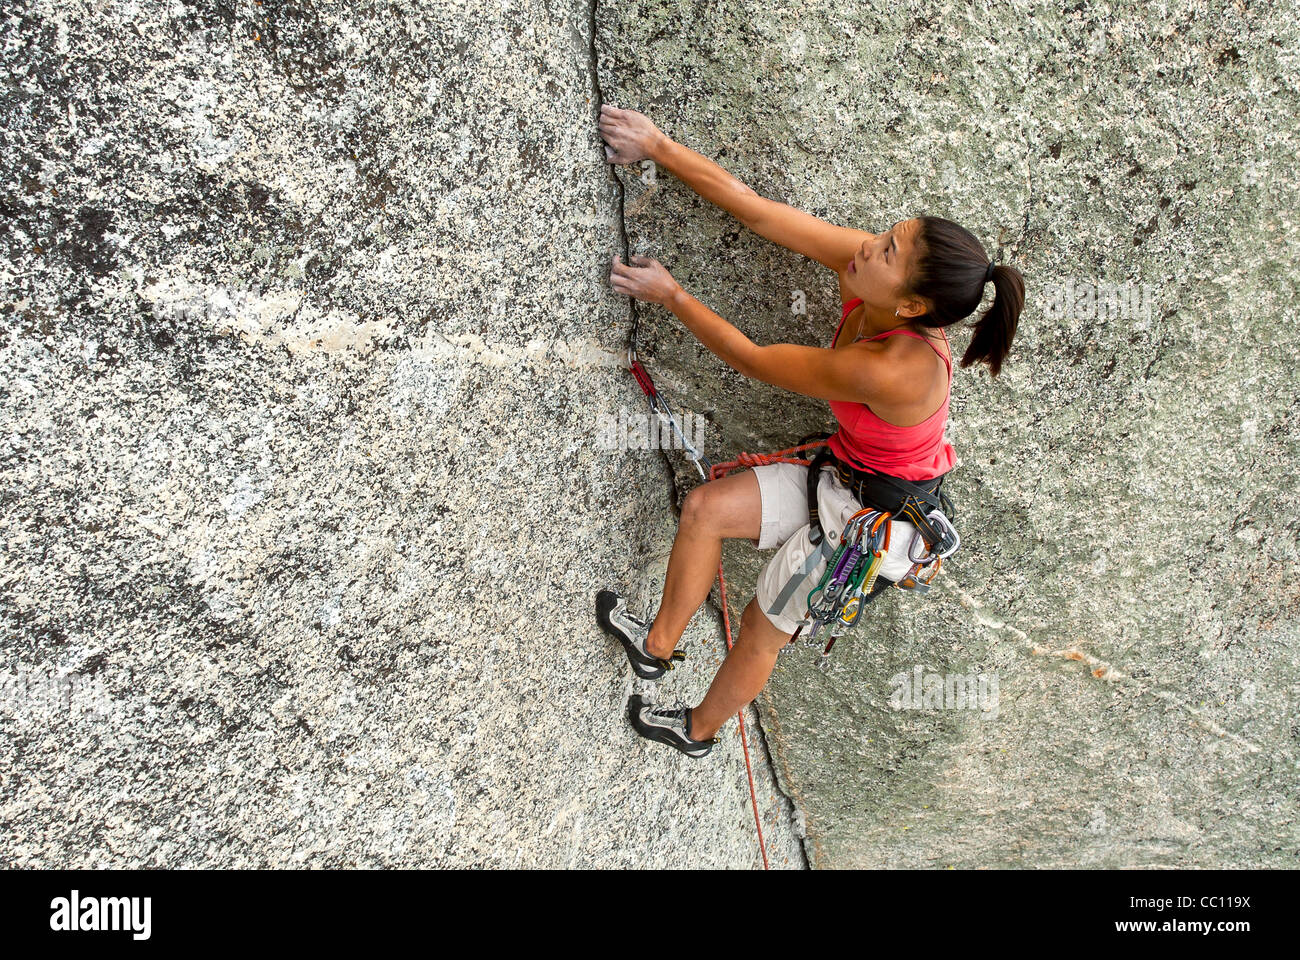 Weiblichen Rock Climber kämpft für ihren nächsten Griff am Rande einer steilen Klippe. Stockfoto